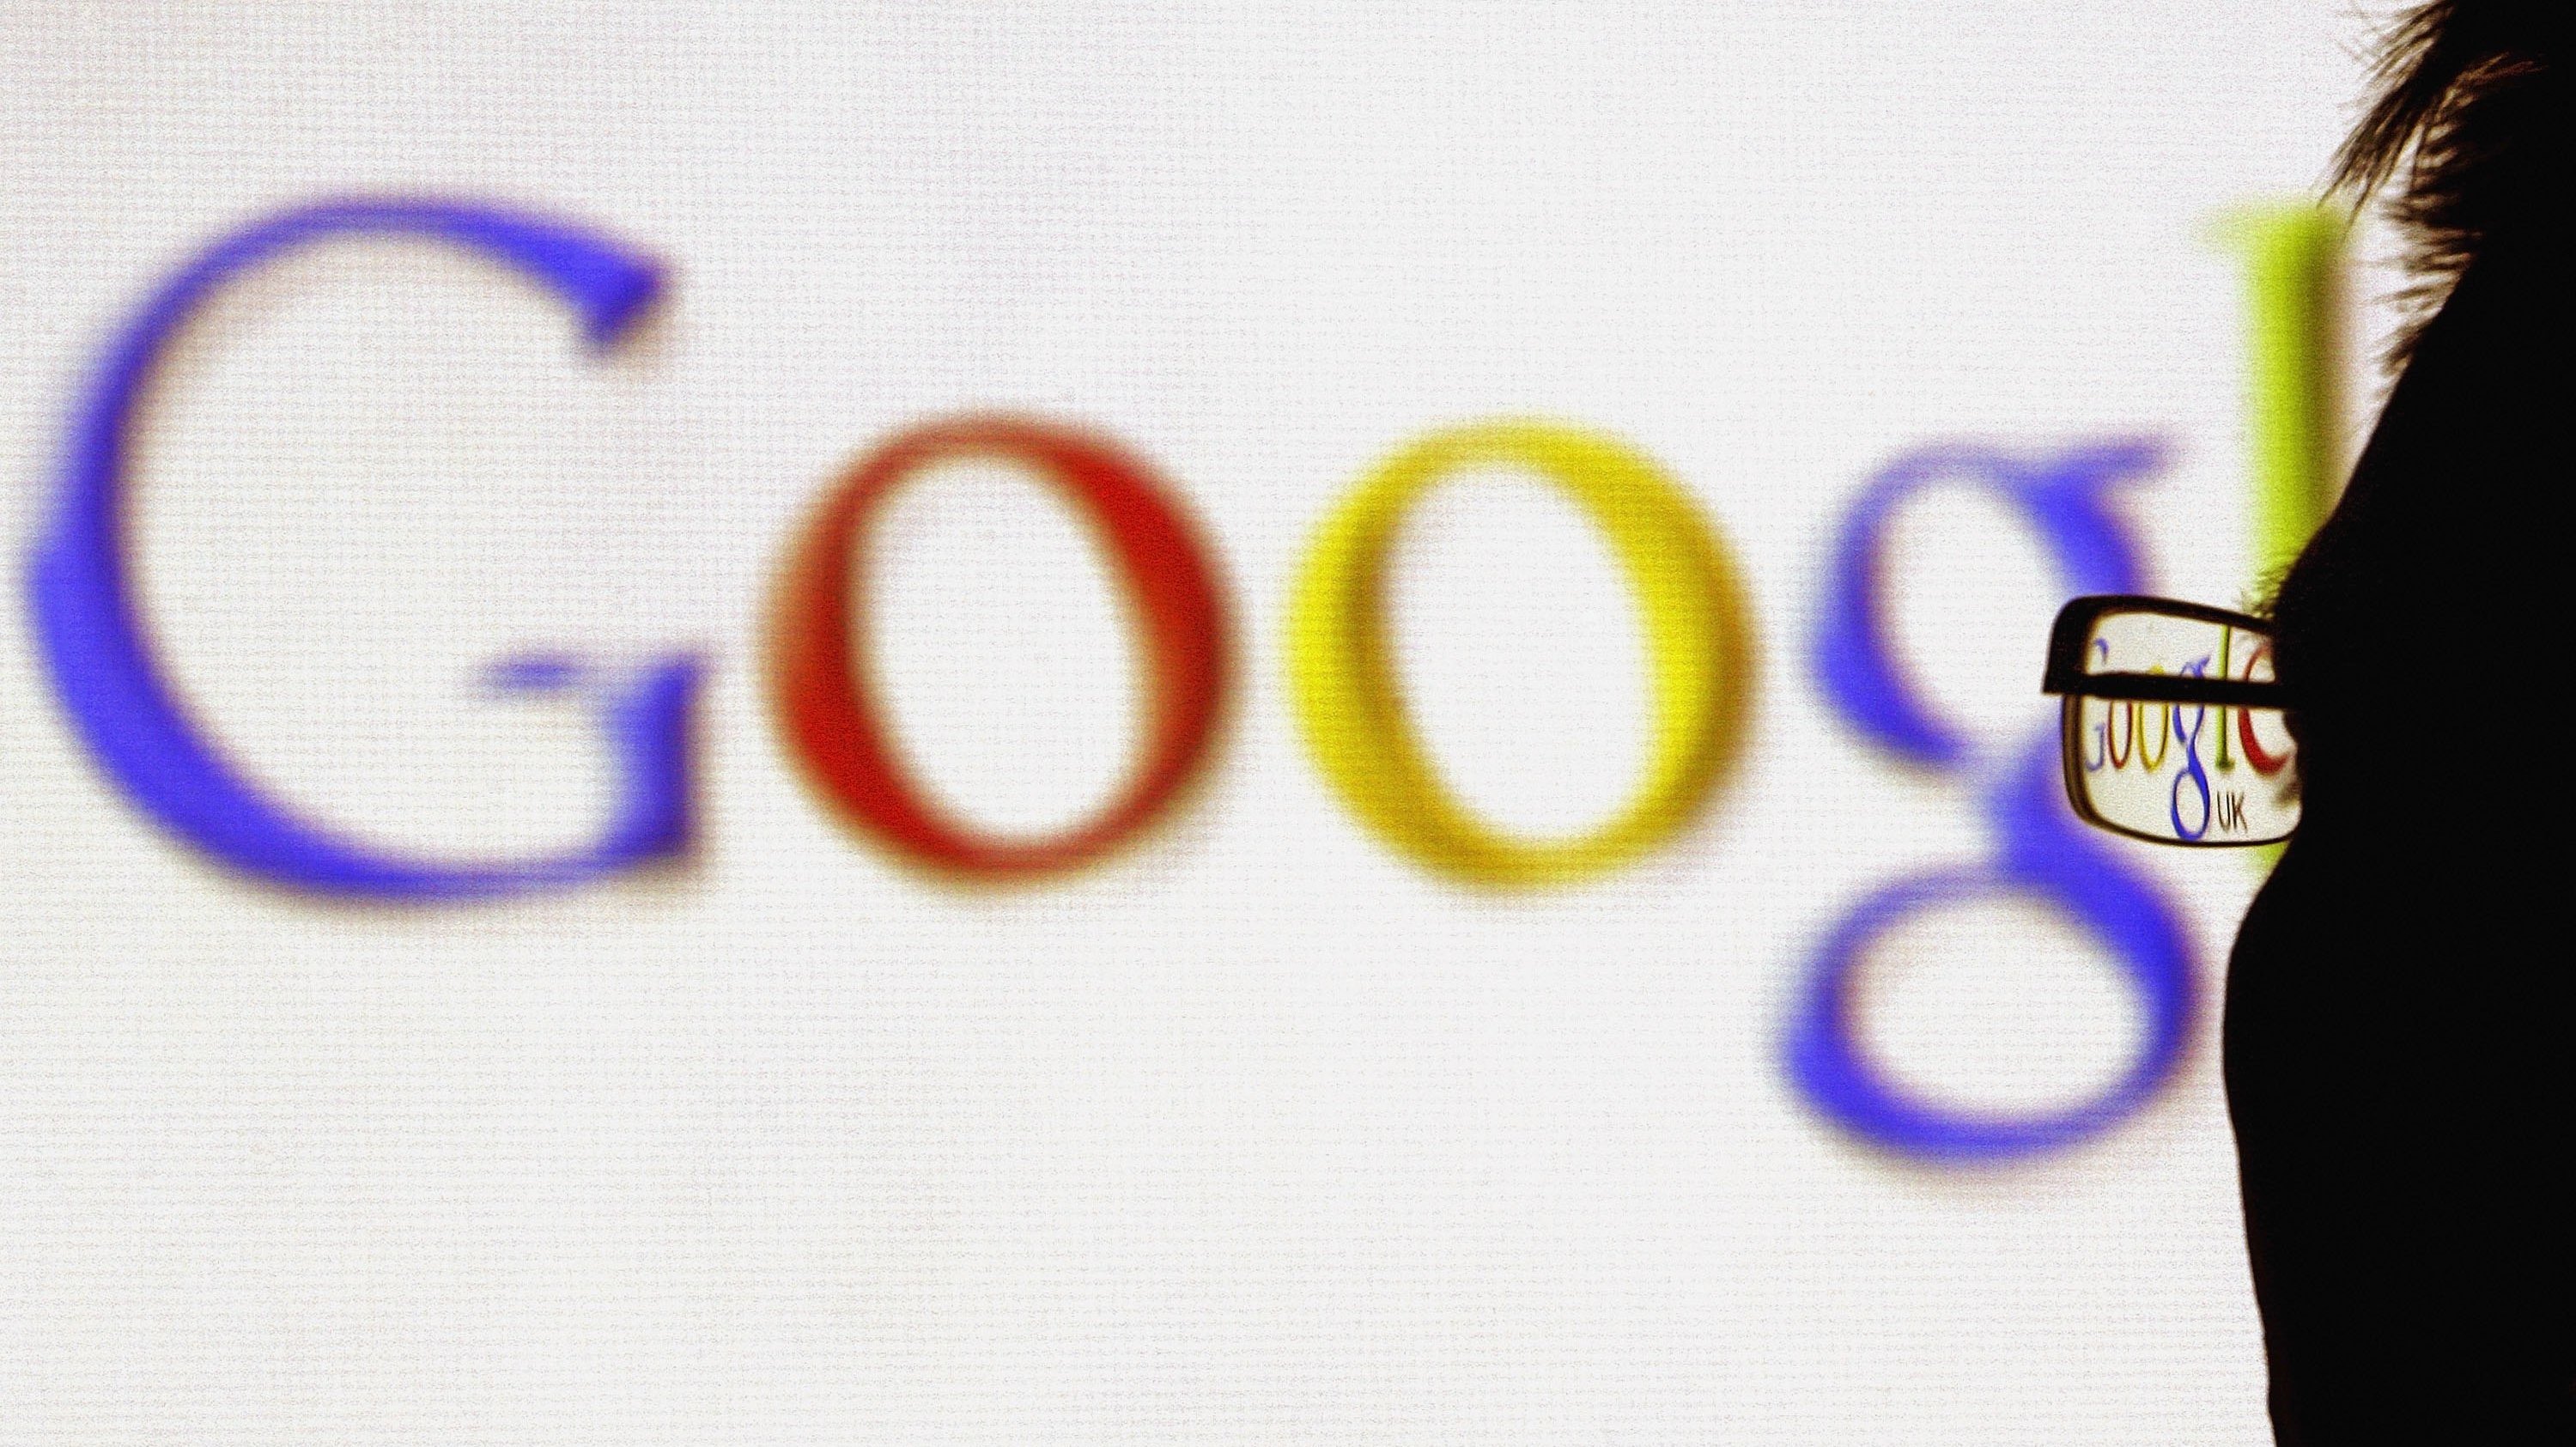 السلطات البريطانية تطلب من "جوجل" تعديل سياسة الخصوصية